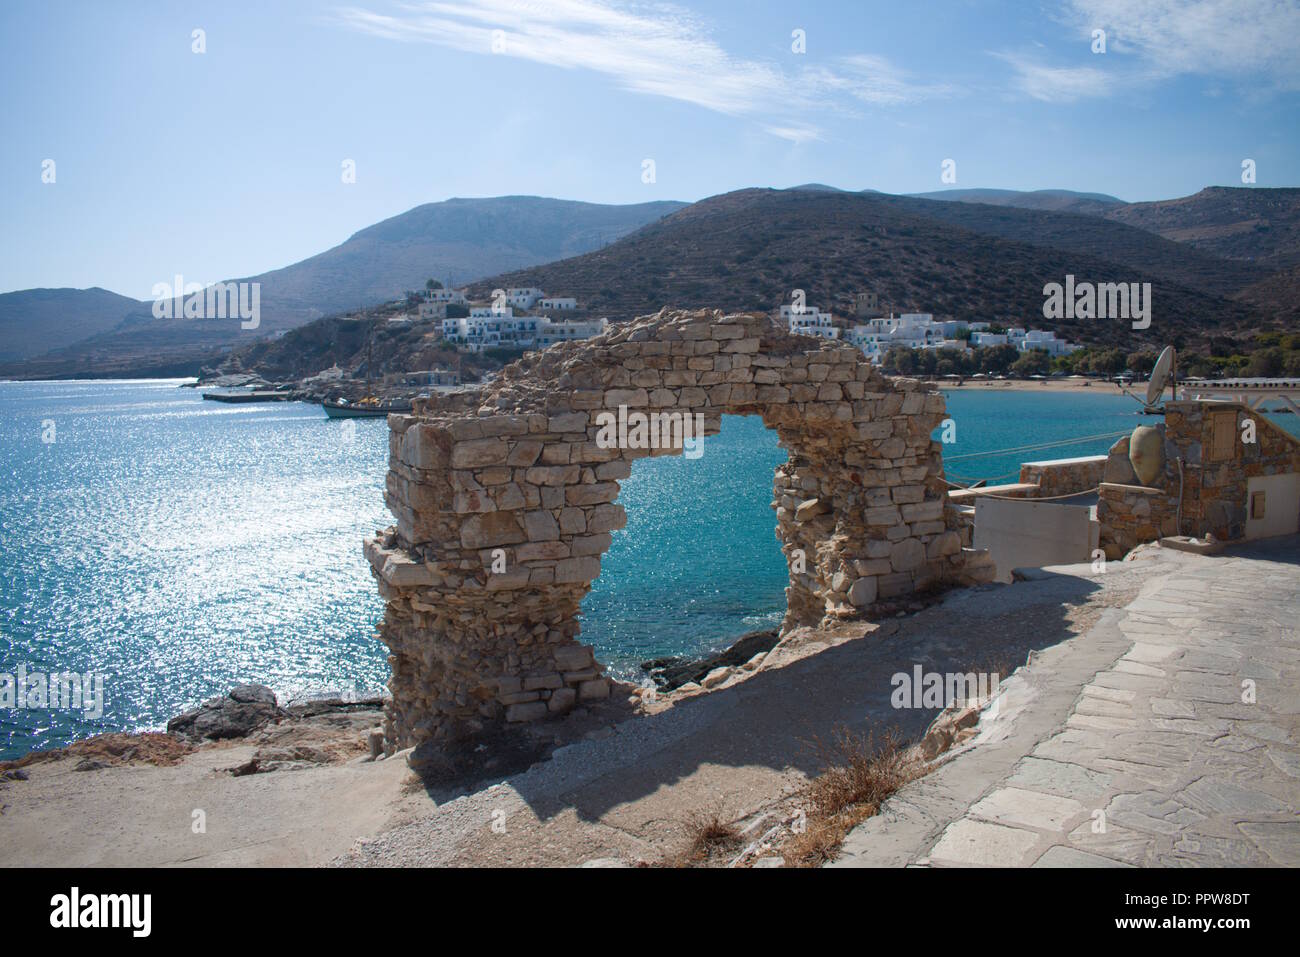 Blick auf ein zerstörtes Gebäude am Rande des Meeres auf der schönen griechischen Insel Sikinos. Das Sonnenlicht reflektiert sich auf dem ruhigen Wasser der Bucht. Stockfoto